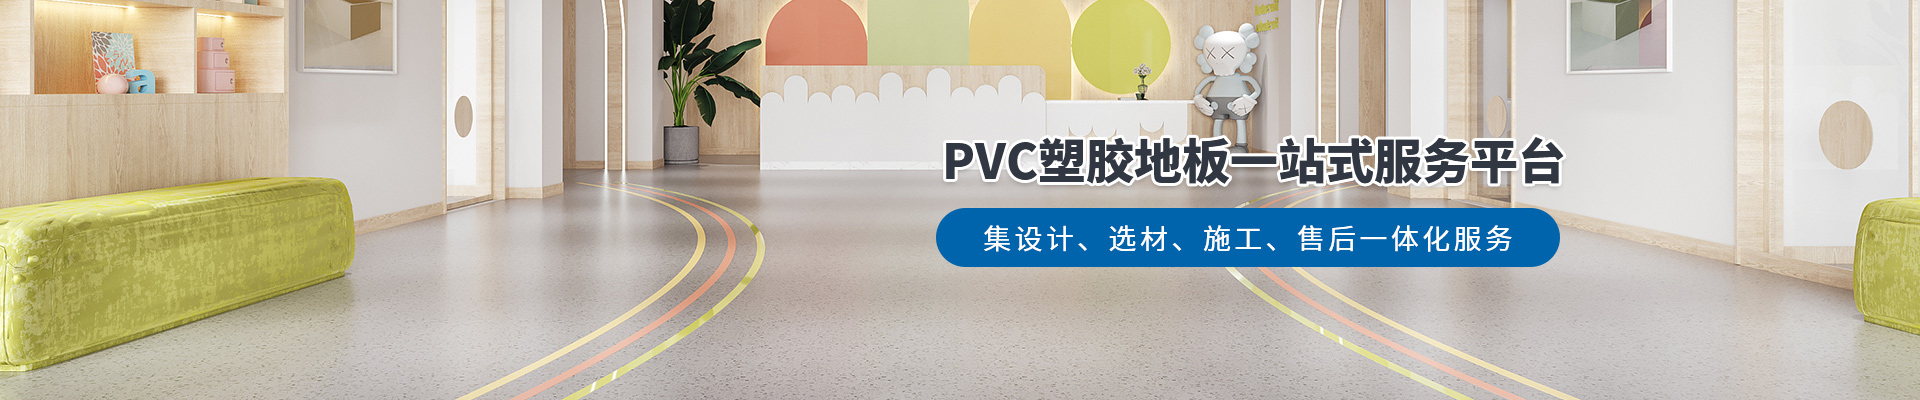 鳳城橡塑，PVC塑膠地板一站式服務平臺